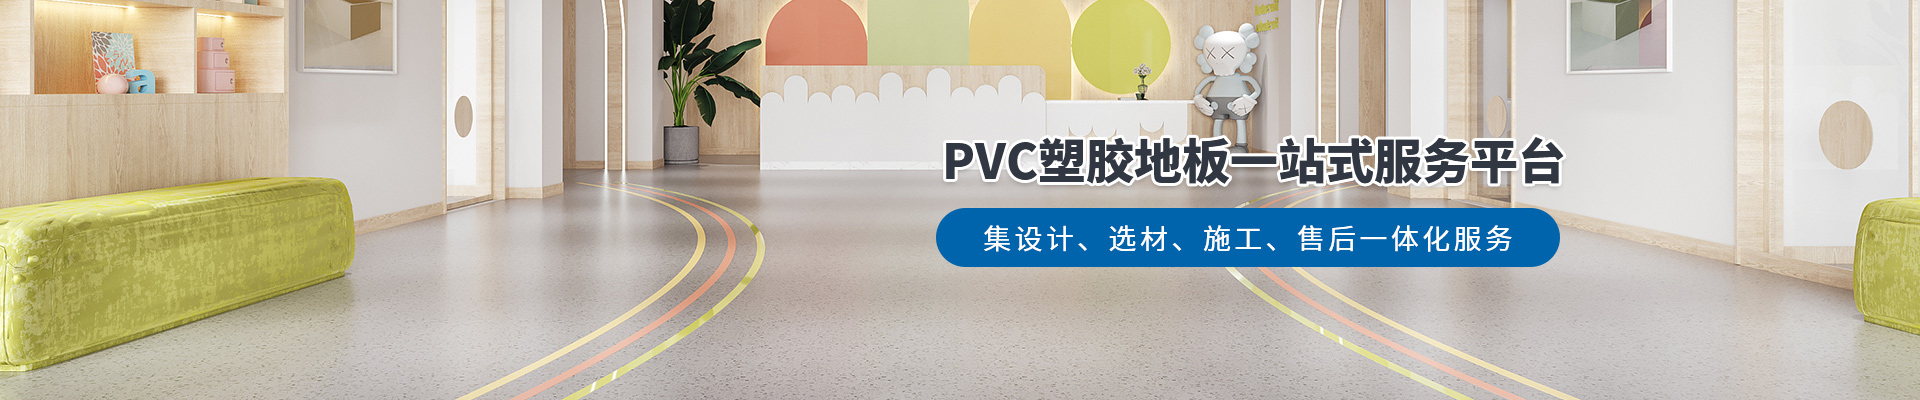 鳳城橡塑，PVC塑膠地板一站式服務平臺